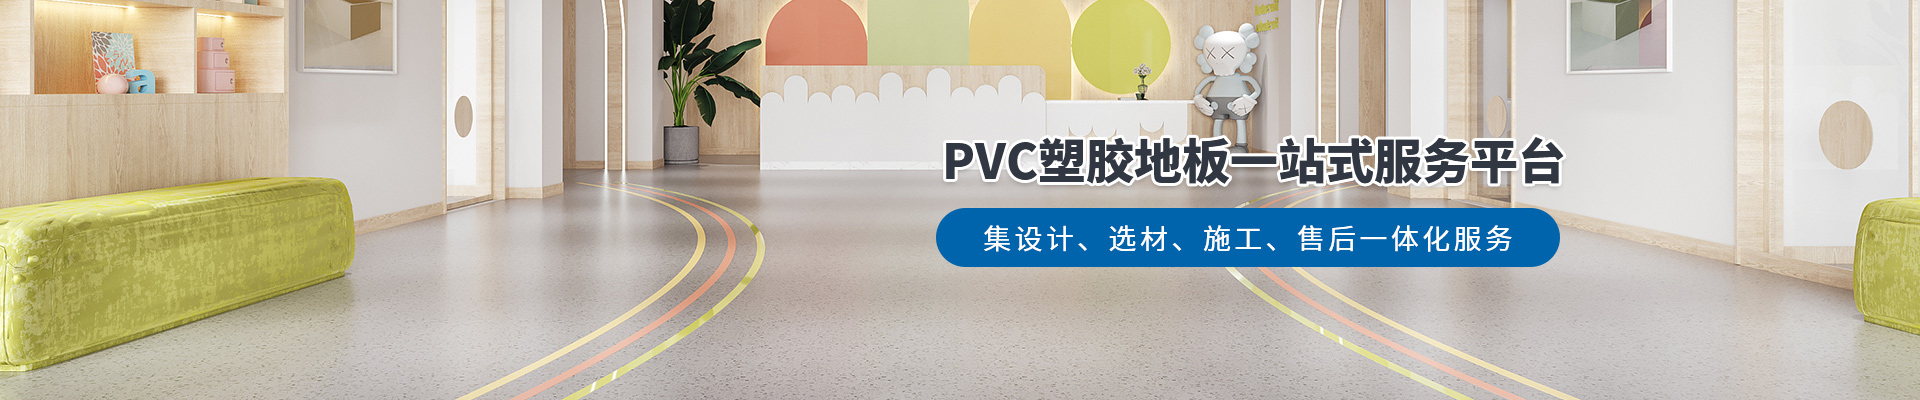 鳳城橡塑，PVC塑膠地板一站式服務平臺